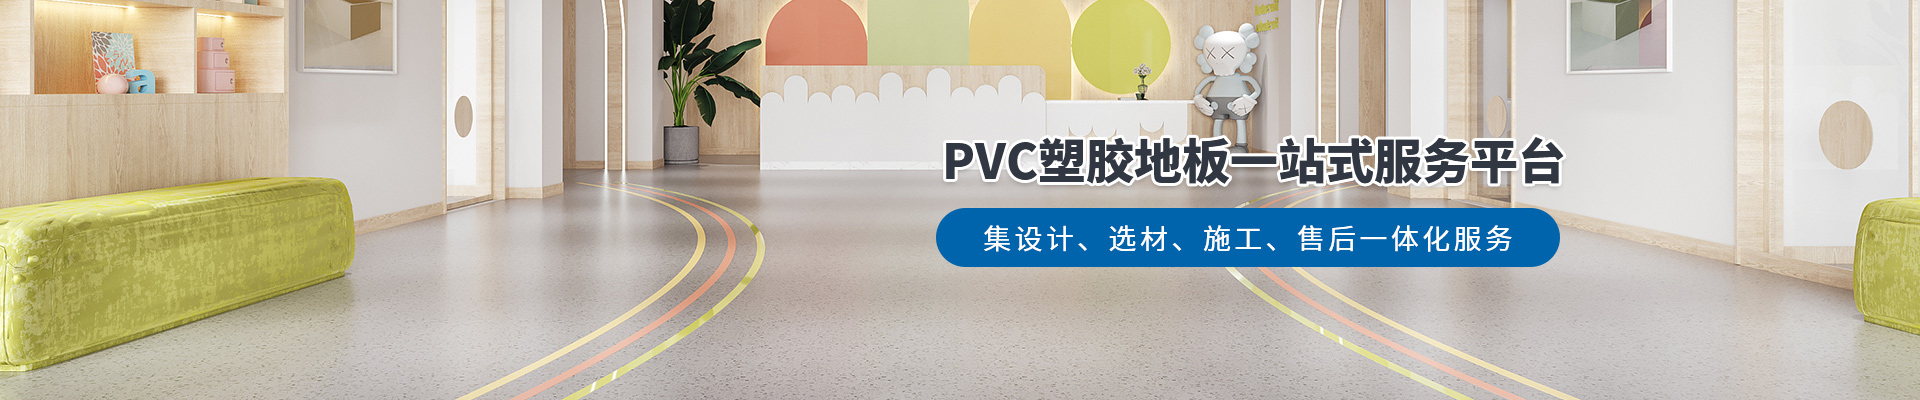 鳳城橡塑，PVC塑膠地板一站式服務平臺